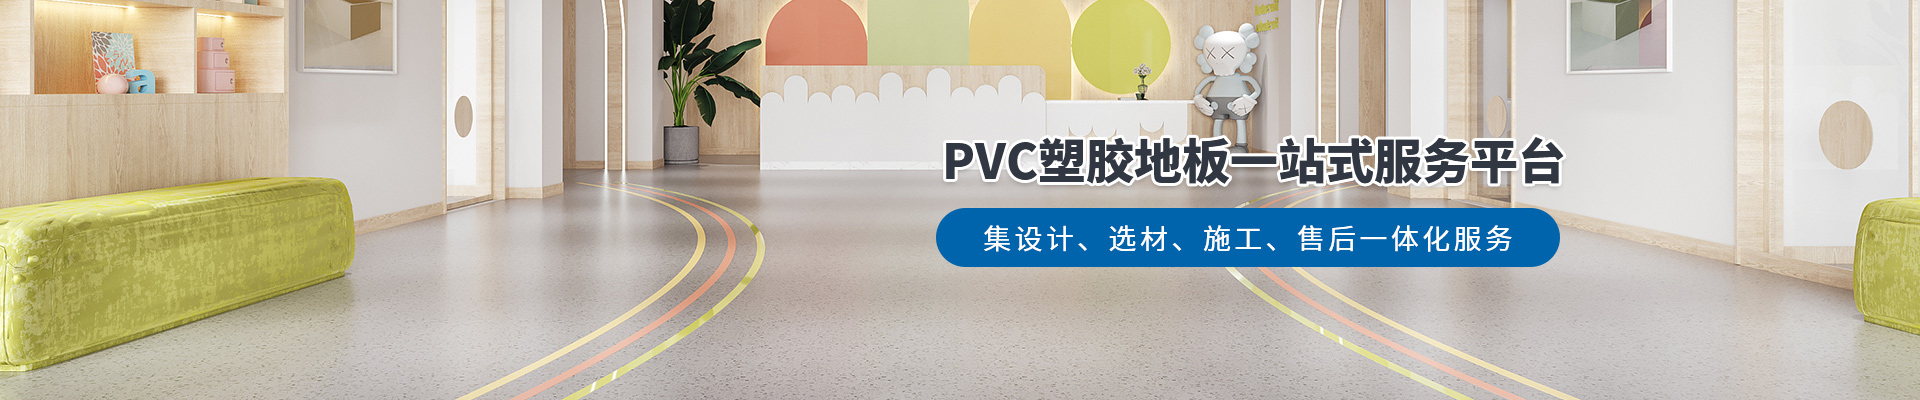 鳳城橡塑，PVC塑膠地板一站式服務平臺